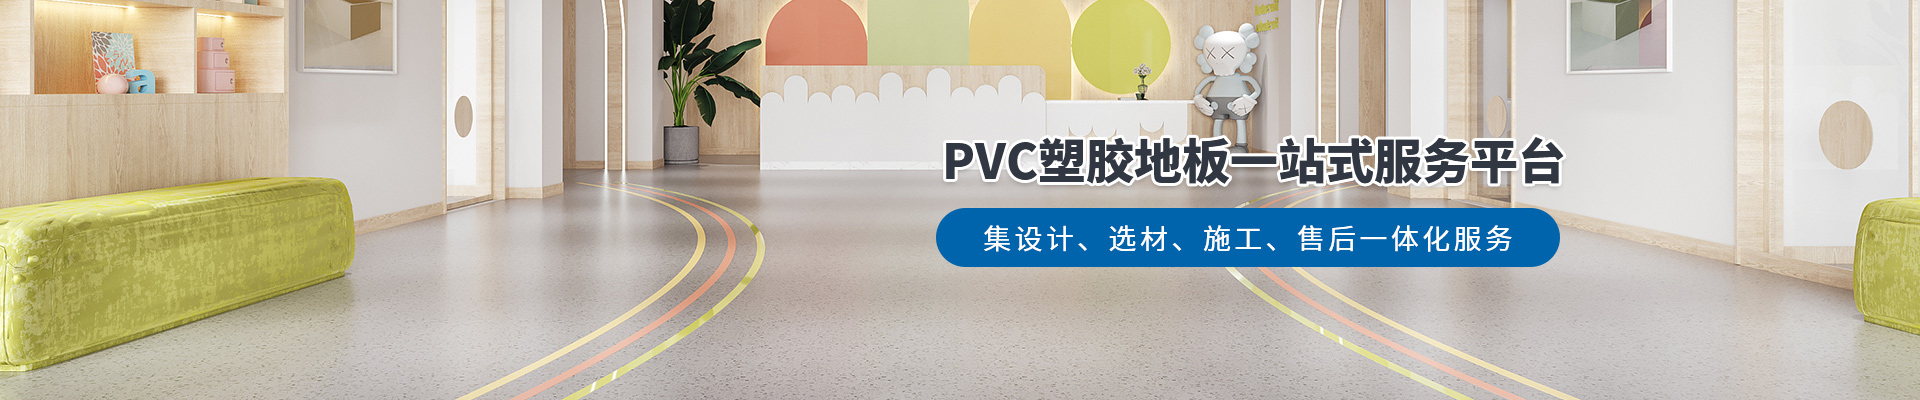 鳳城橡塑，PVC塑膠地板一站式服務平臺